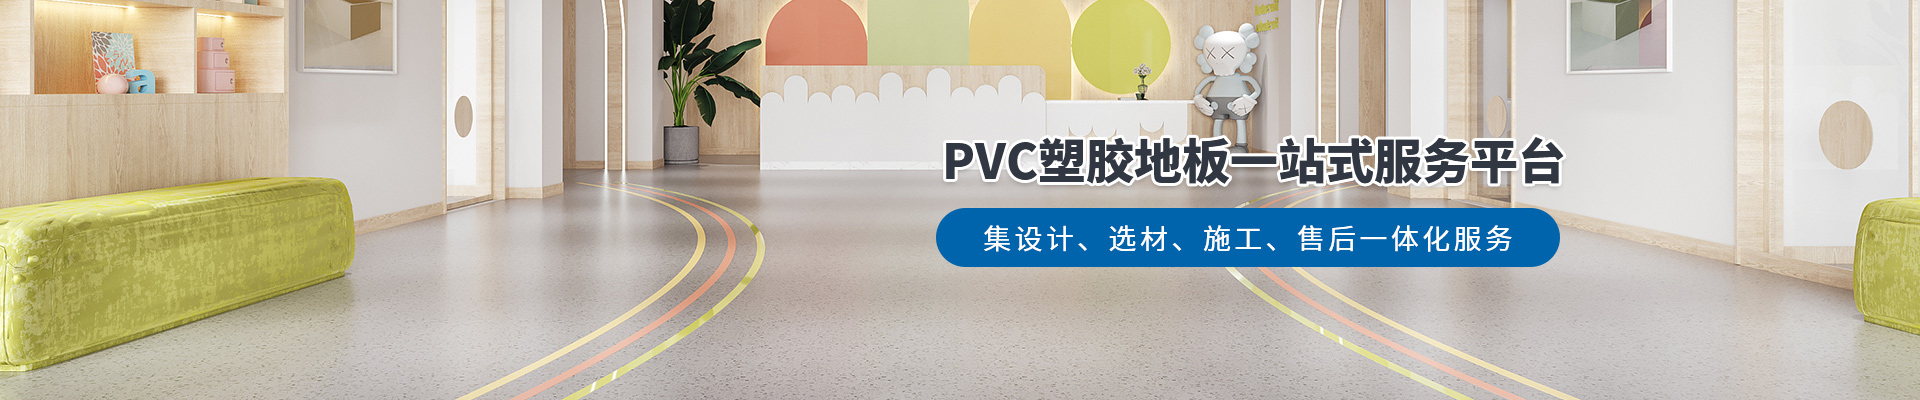 鳳城橡塑，PVC塑膠地板一站式服務平臺